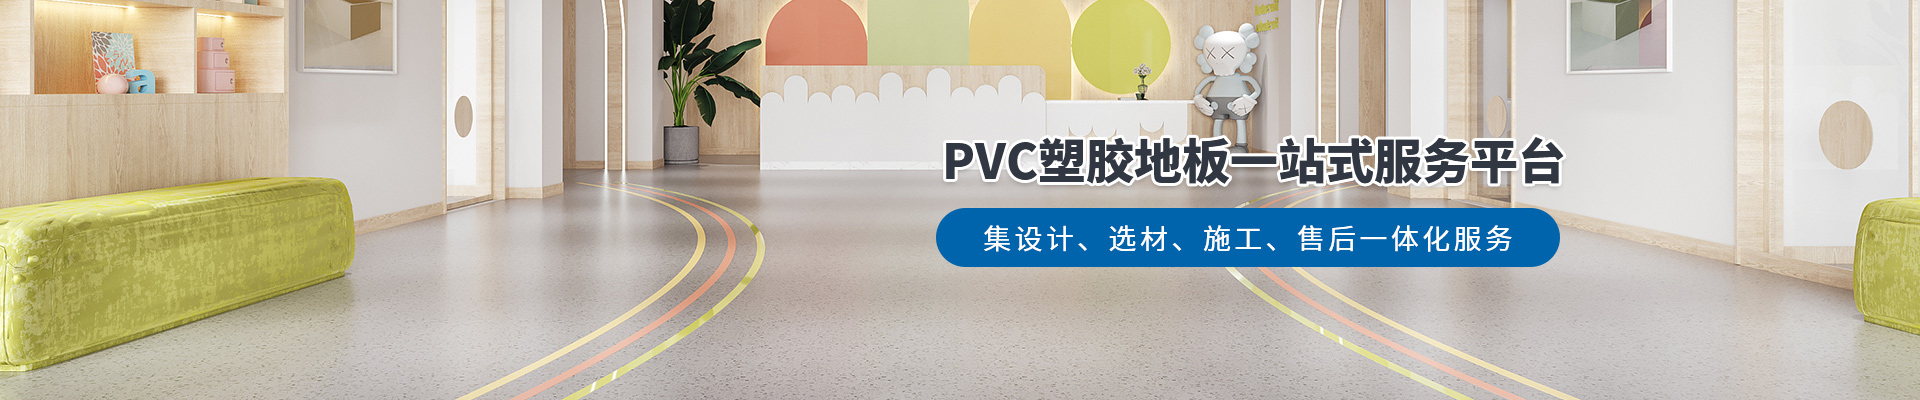 鳳城橡塑，PVC塑膠地板一站式服務平臺